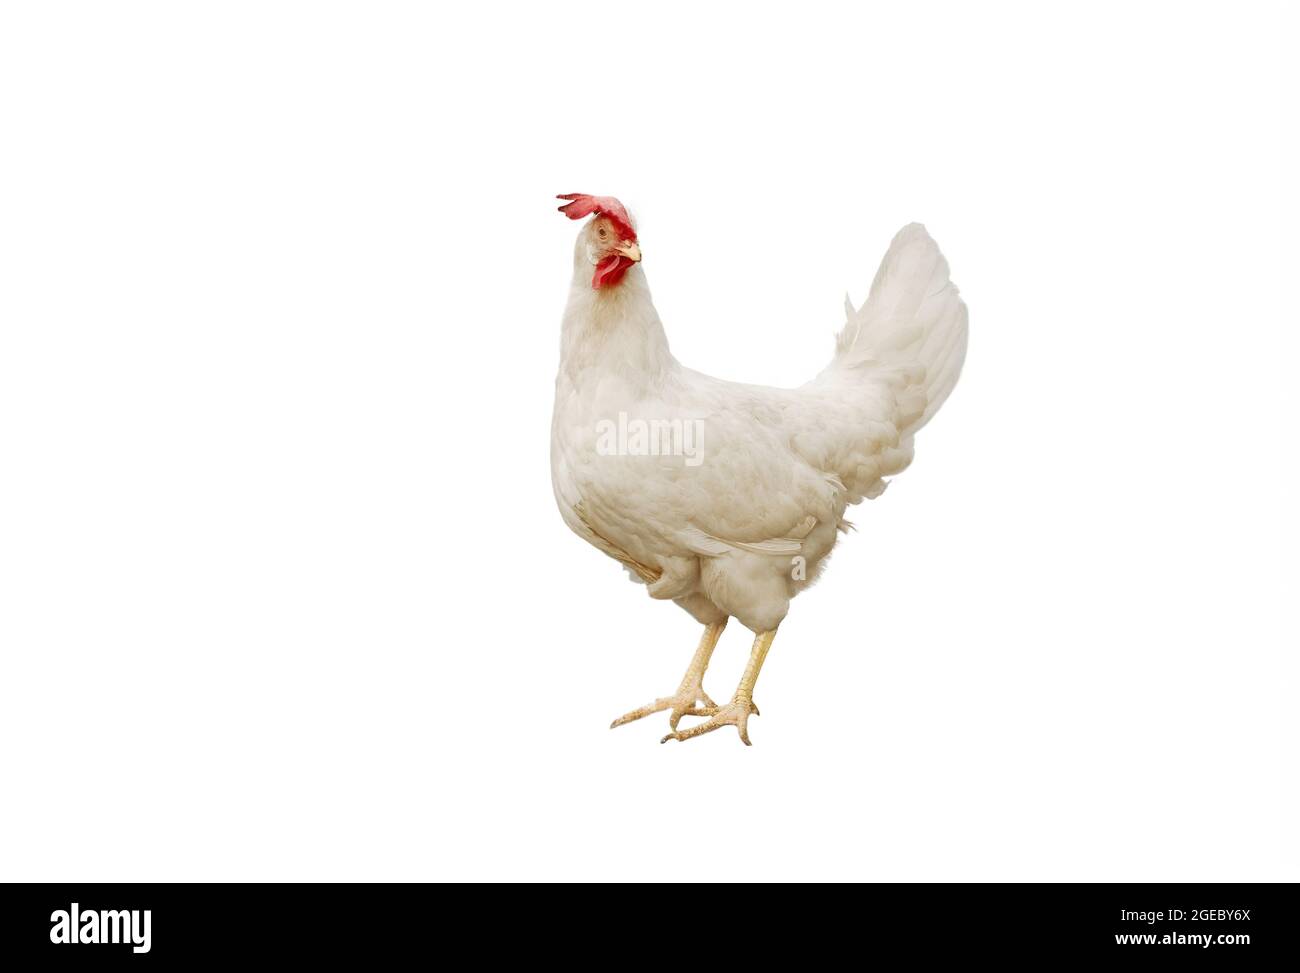 Ritratto a tutta lunghezza di una gallina bianca con un pettine rosso Foto Stock